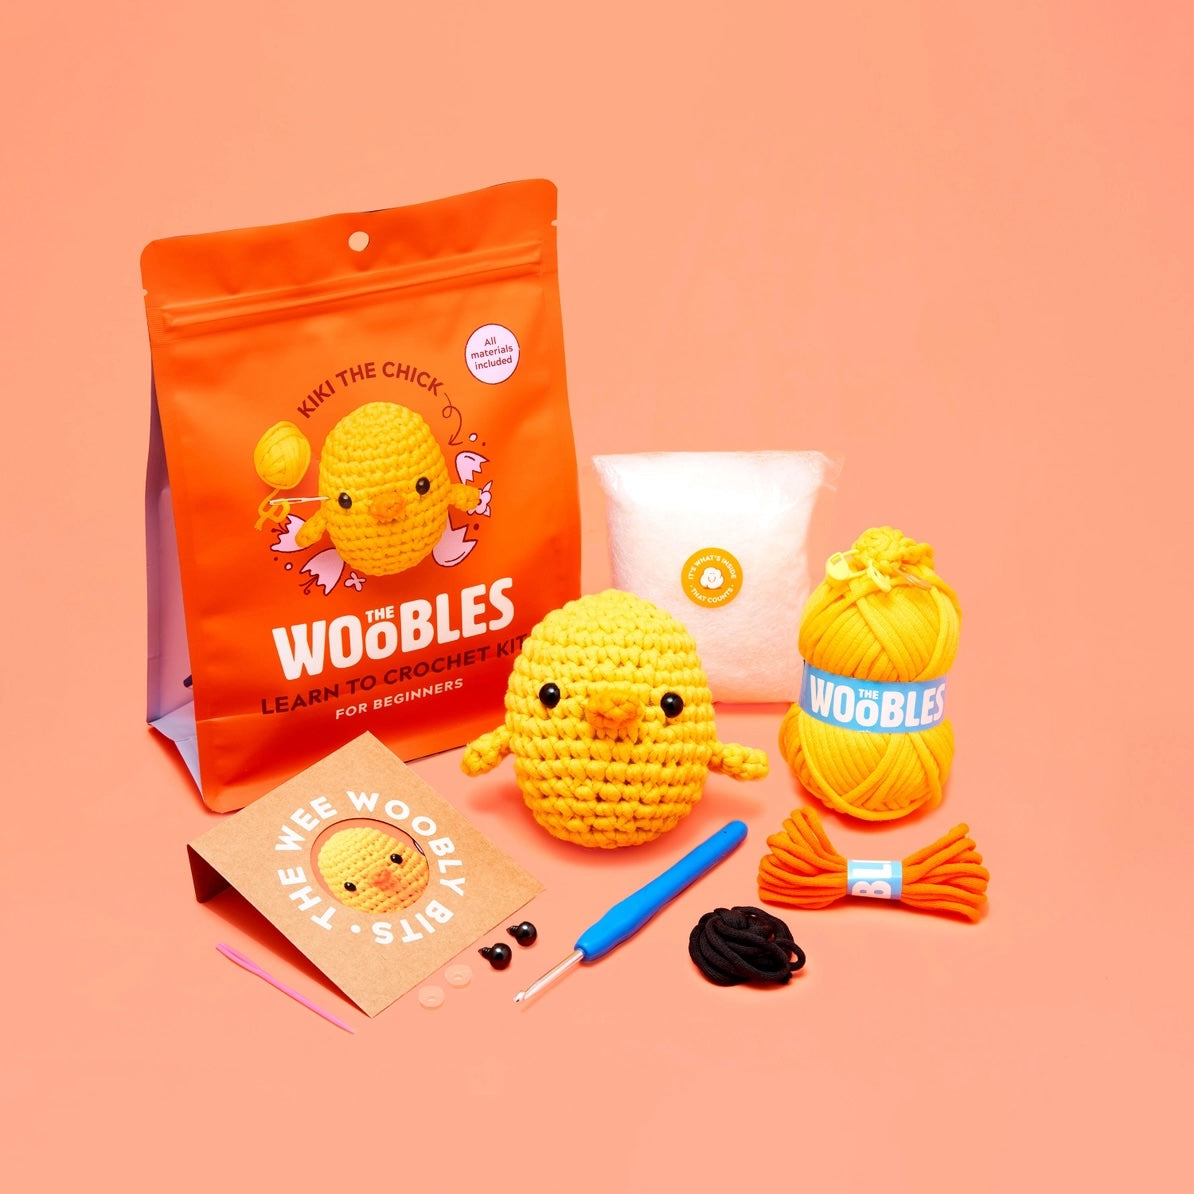 The Woobles Beginner Crochet Kit